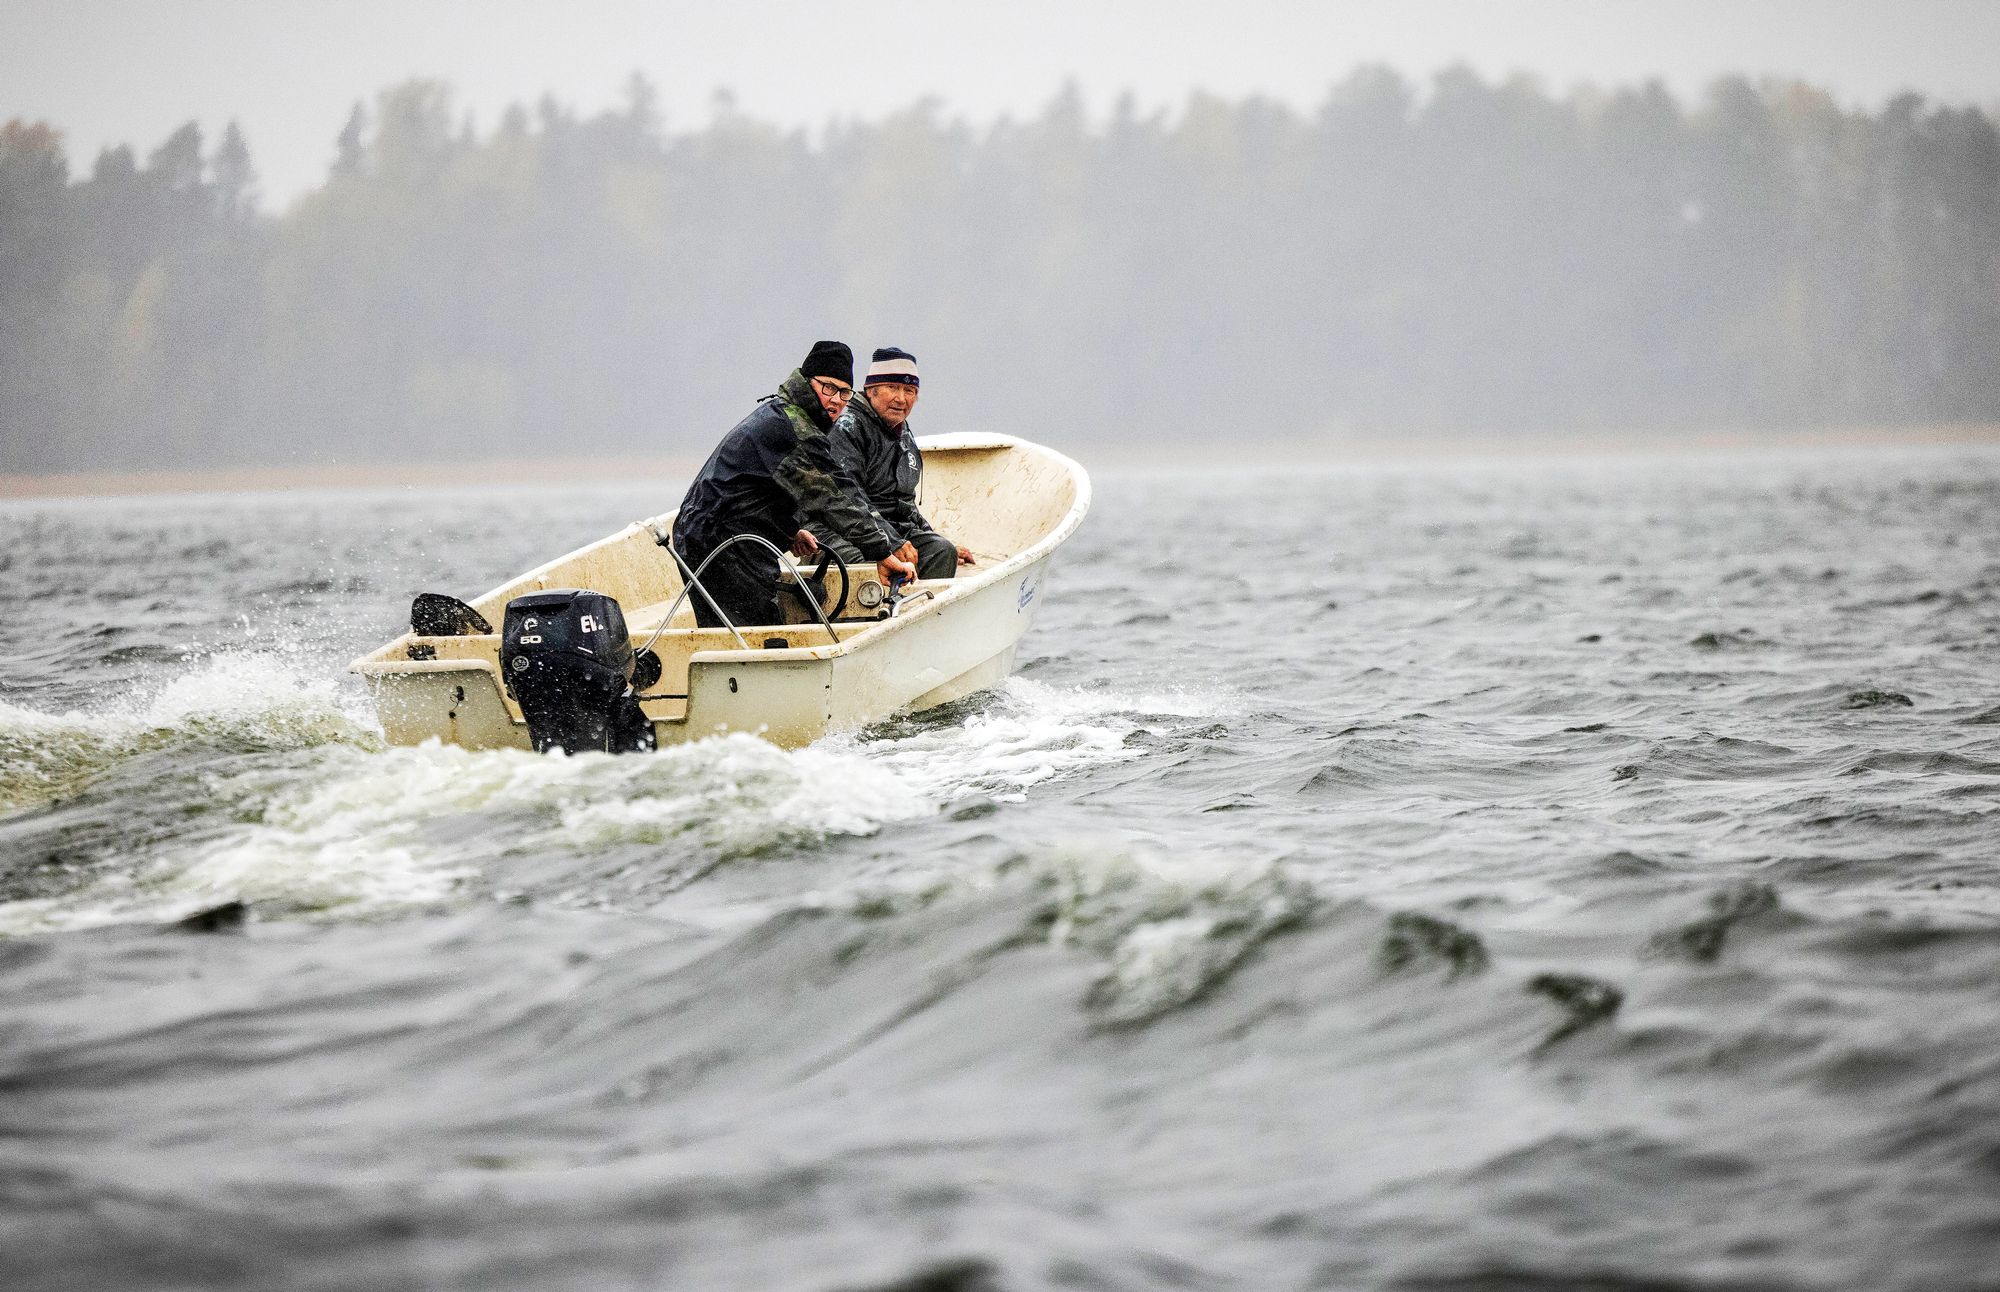 Hannu Langin ja Ben Henrikssonin vene halkoo Ahvenkosken aaltoja matkalla kokemaan nahkiaisrysää. © Juha Metso